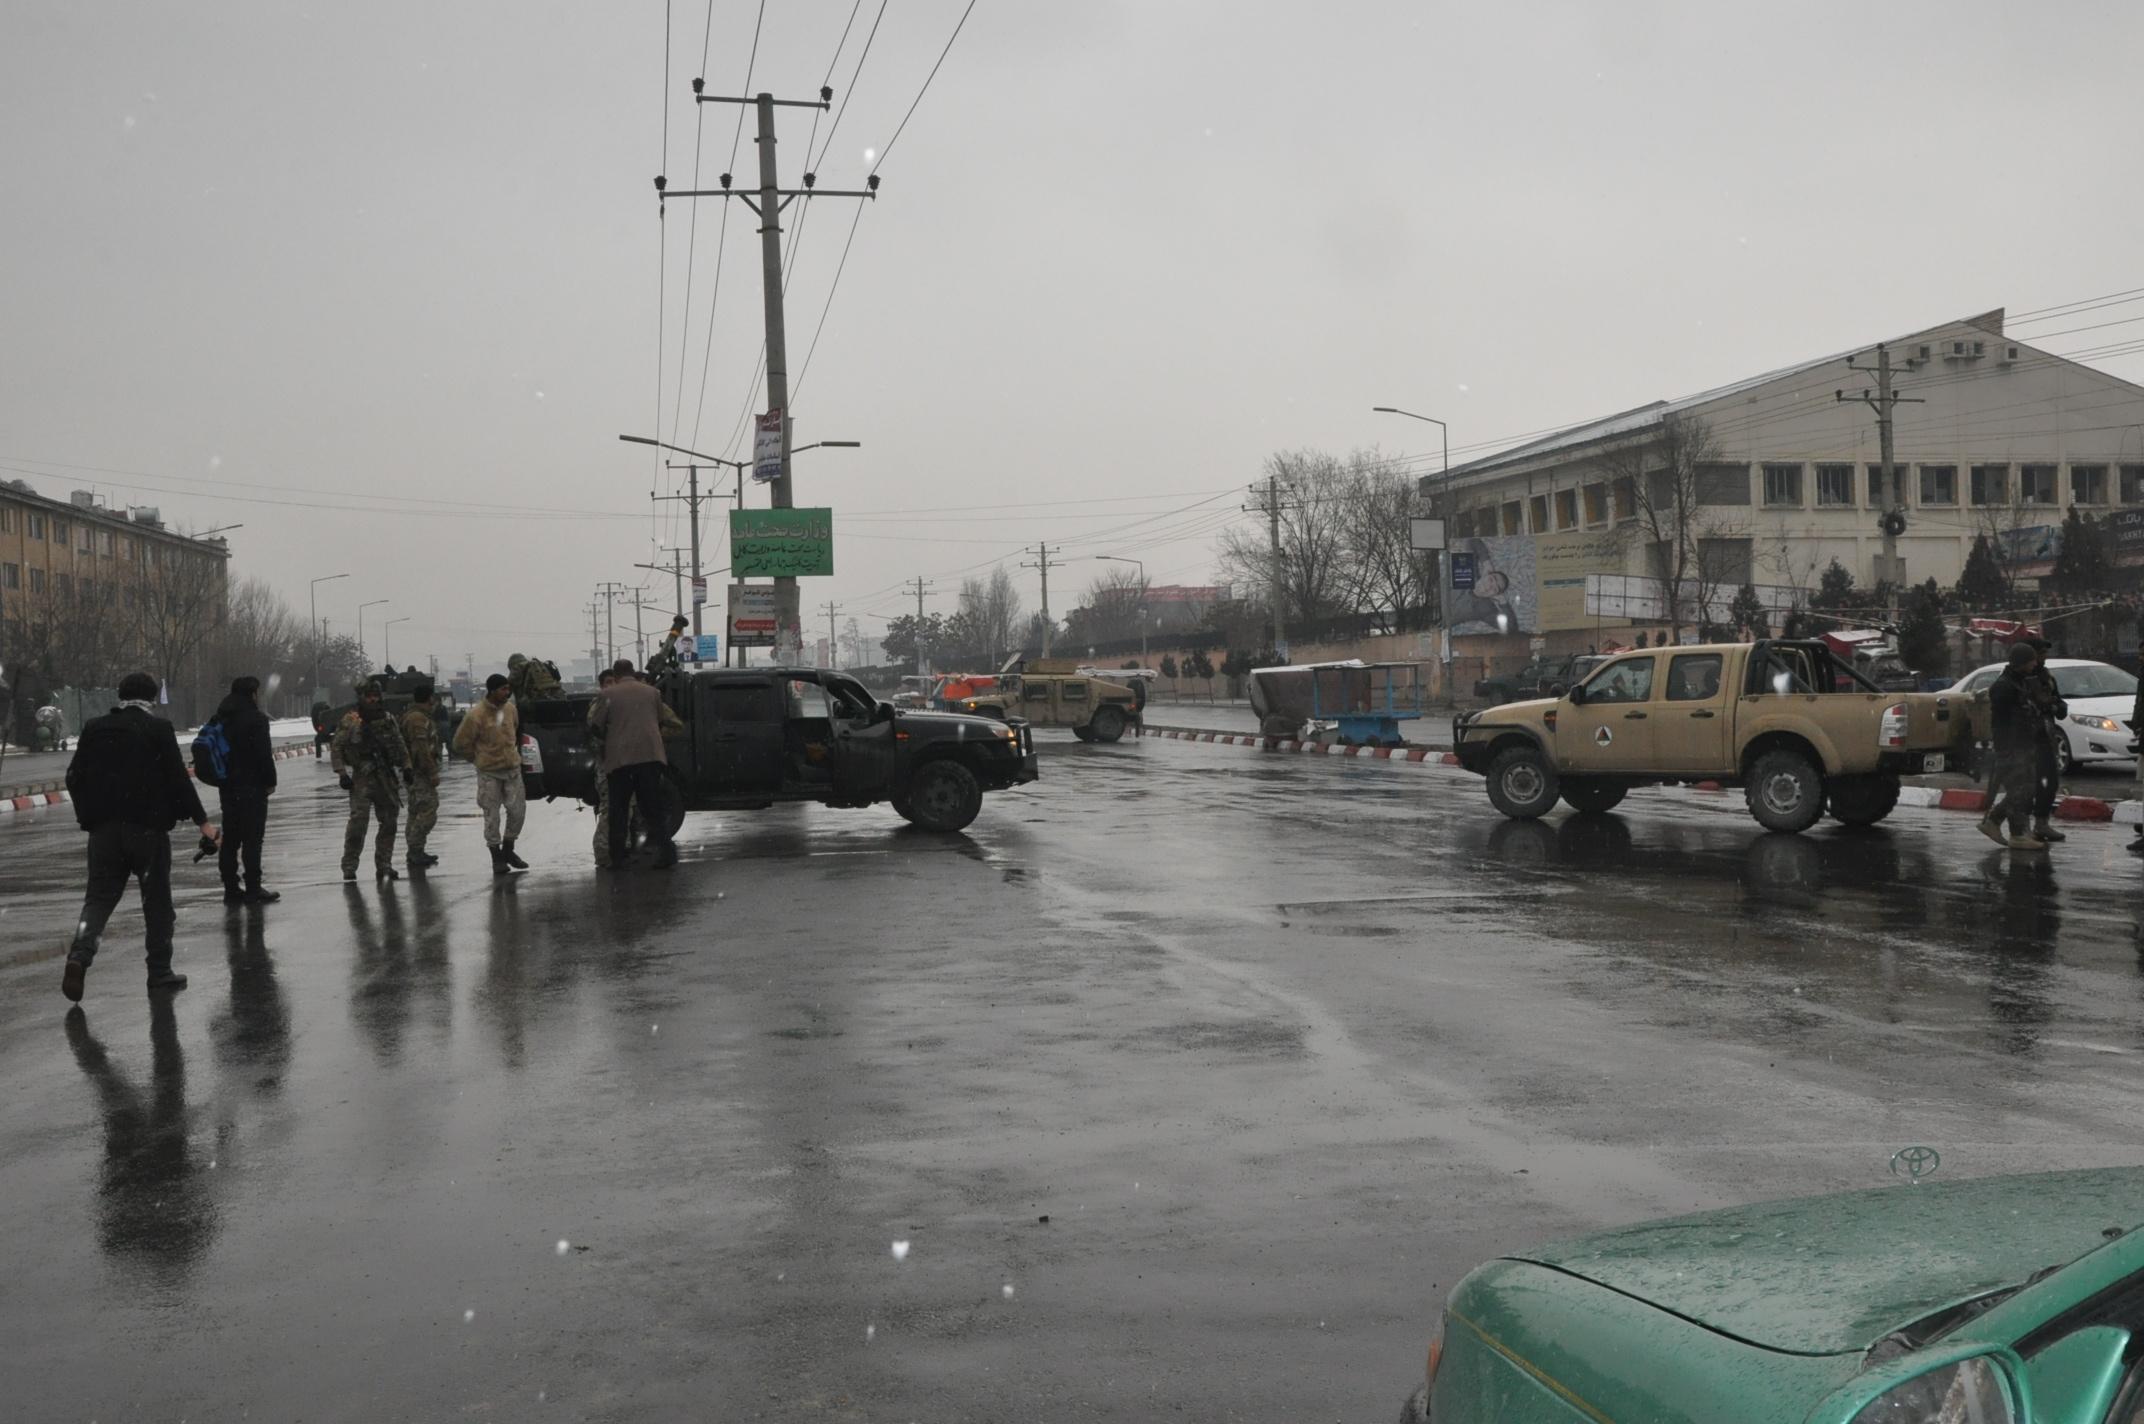 حمله بر فرقۀ ١١١کابل با کشته شدن ١١ مهاجم و ١٦ سرباز به پايان رسيد